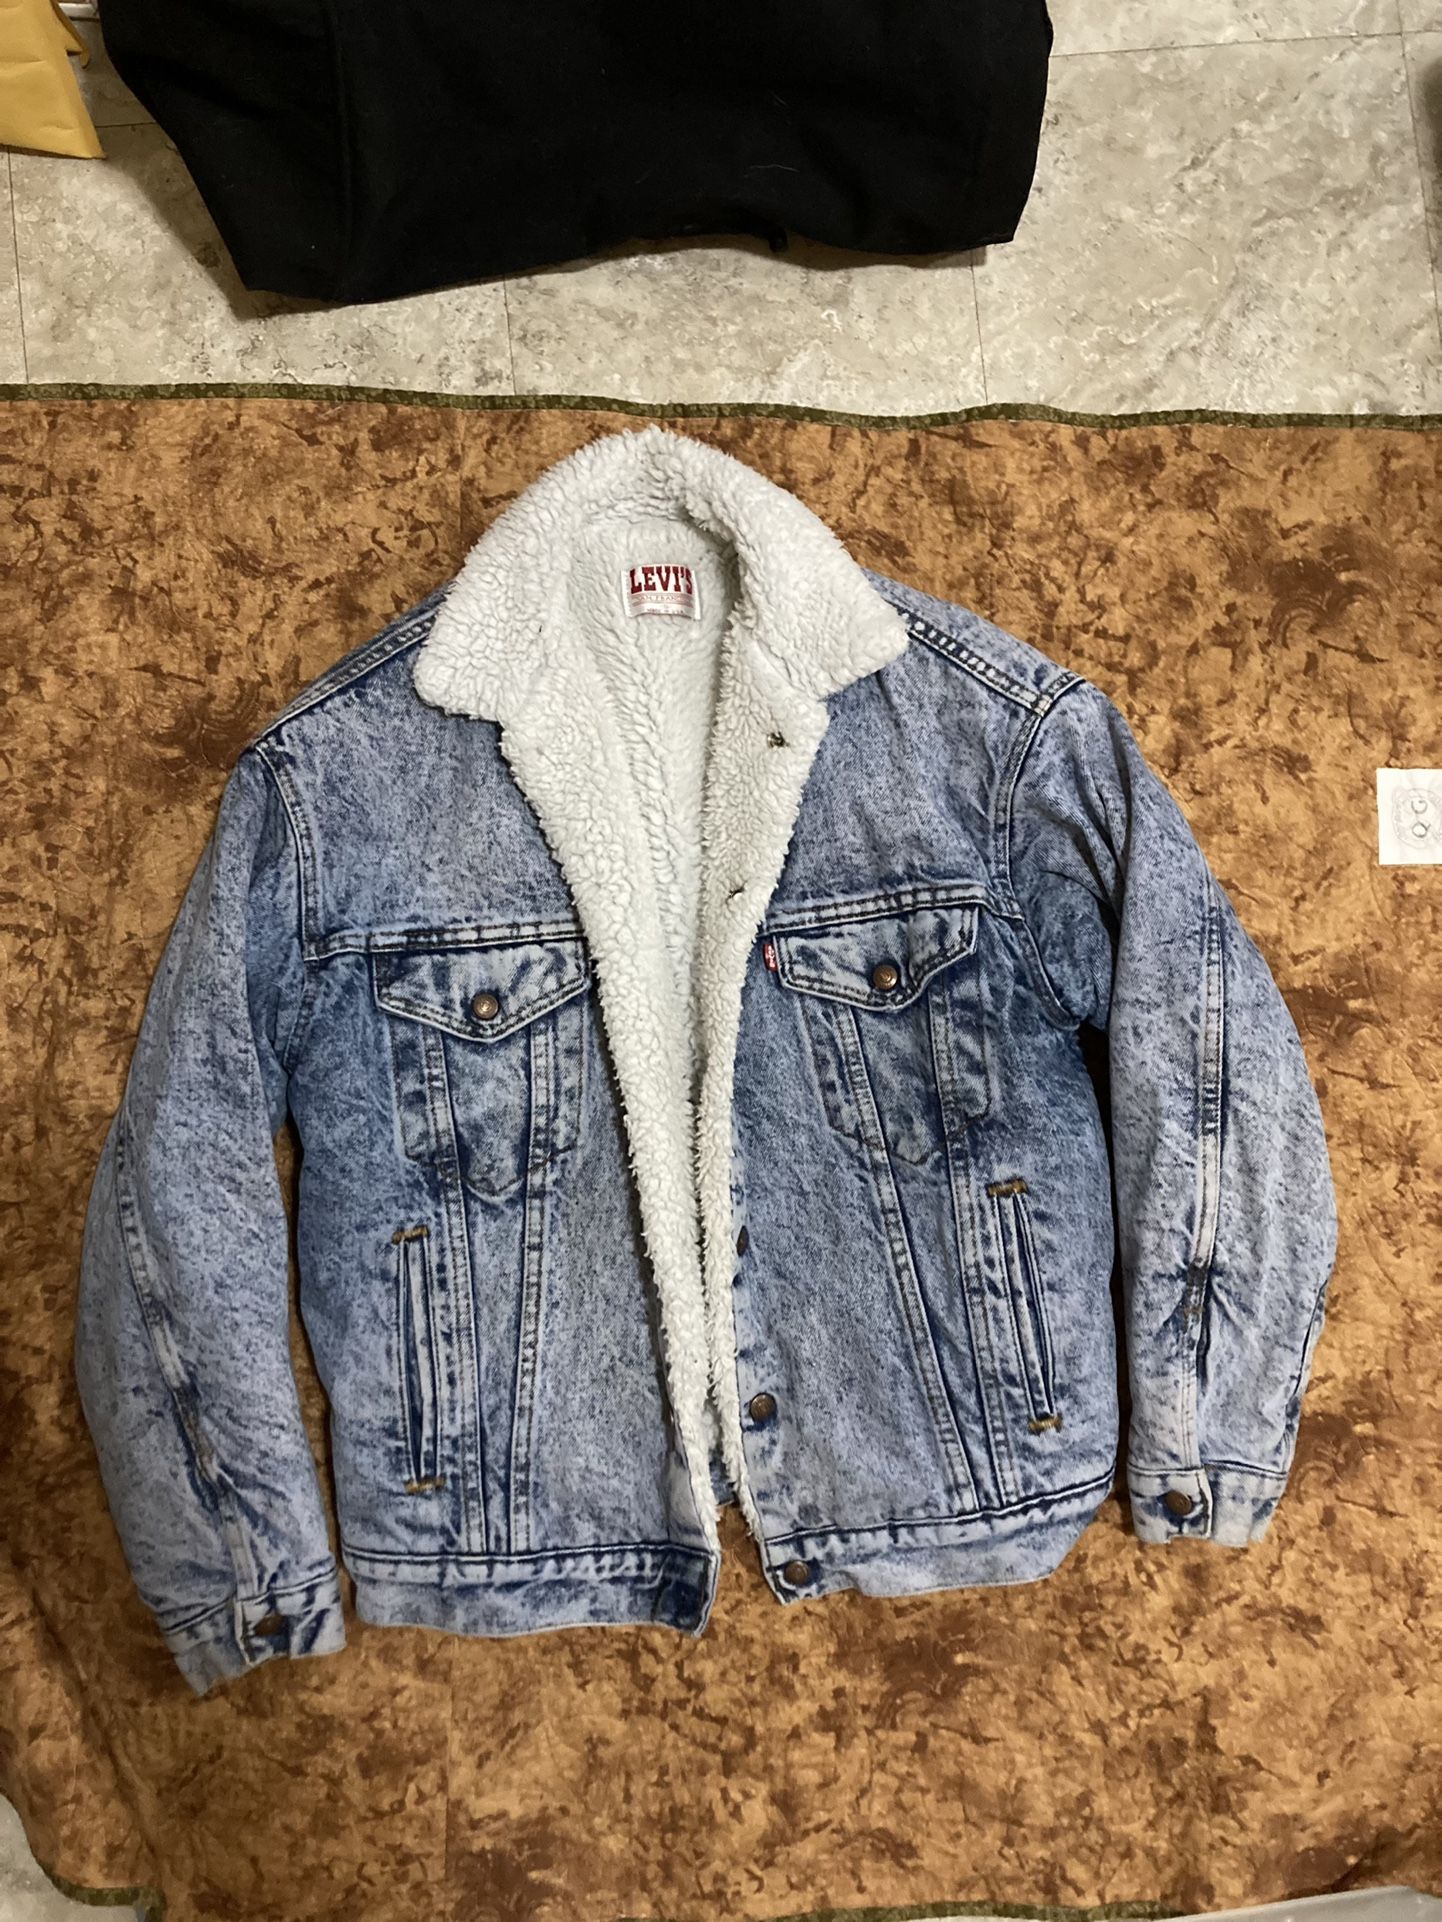 Vintage 80s Acid Washed Sherpa Levi’s Denim Jacket Coat 